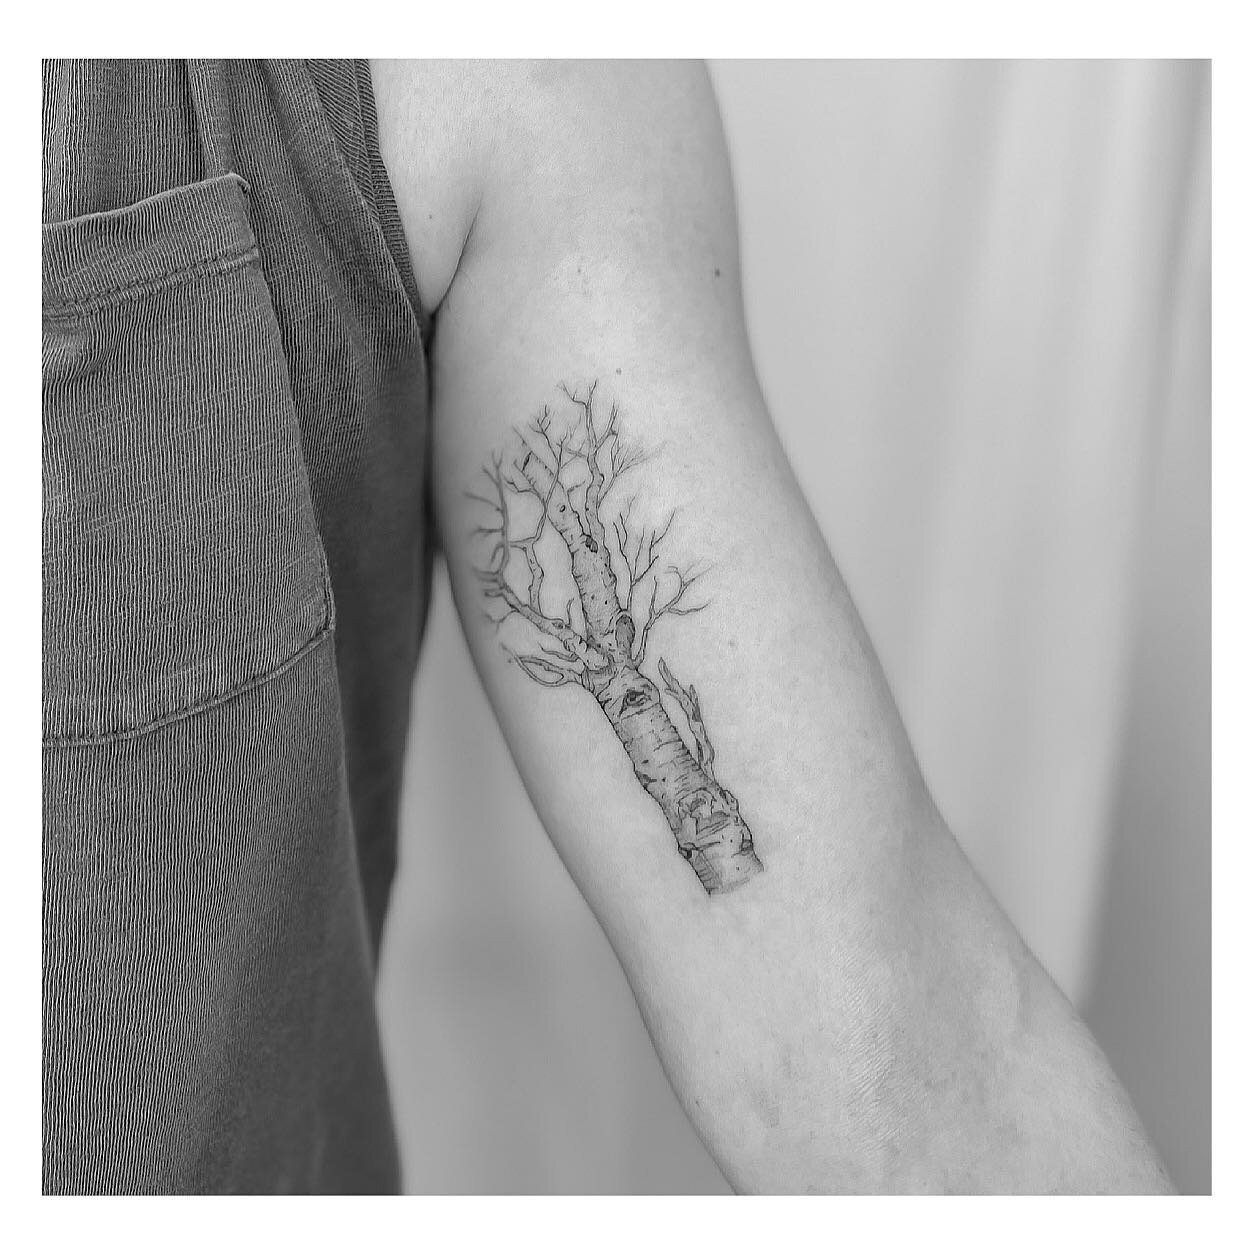 Birch tree tattoo  Birch tree tattoos Birches tattoo Tree tattoo